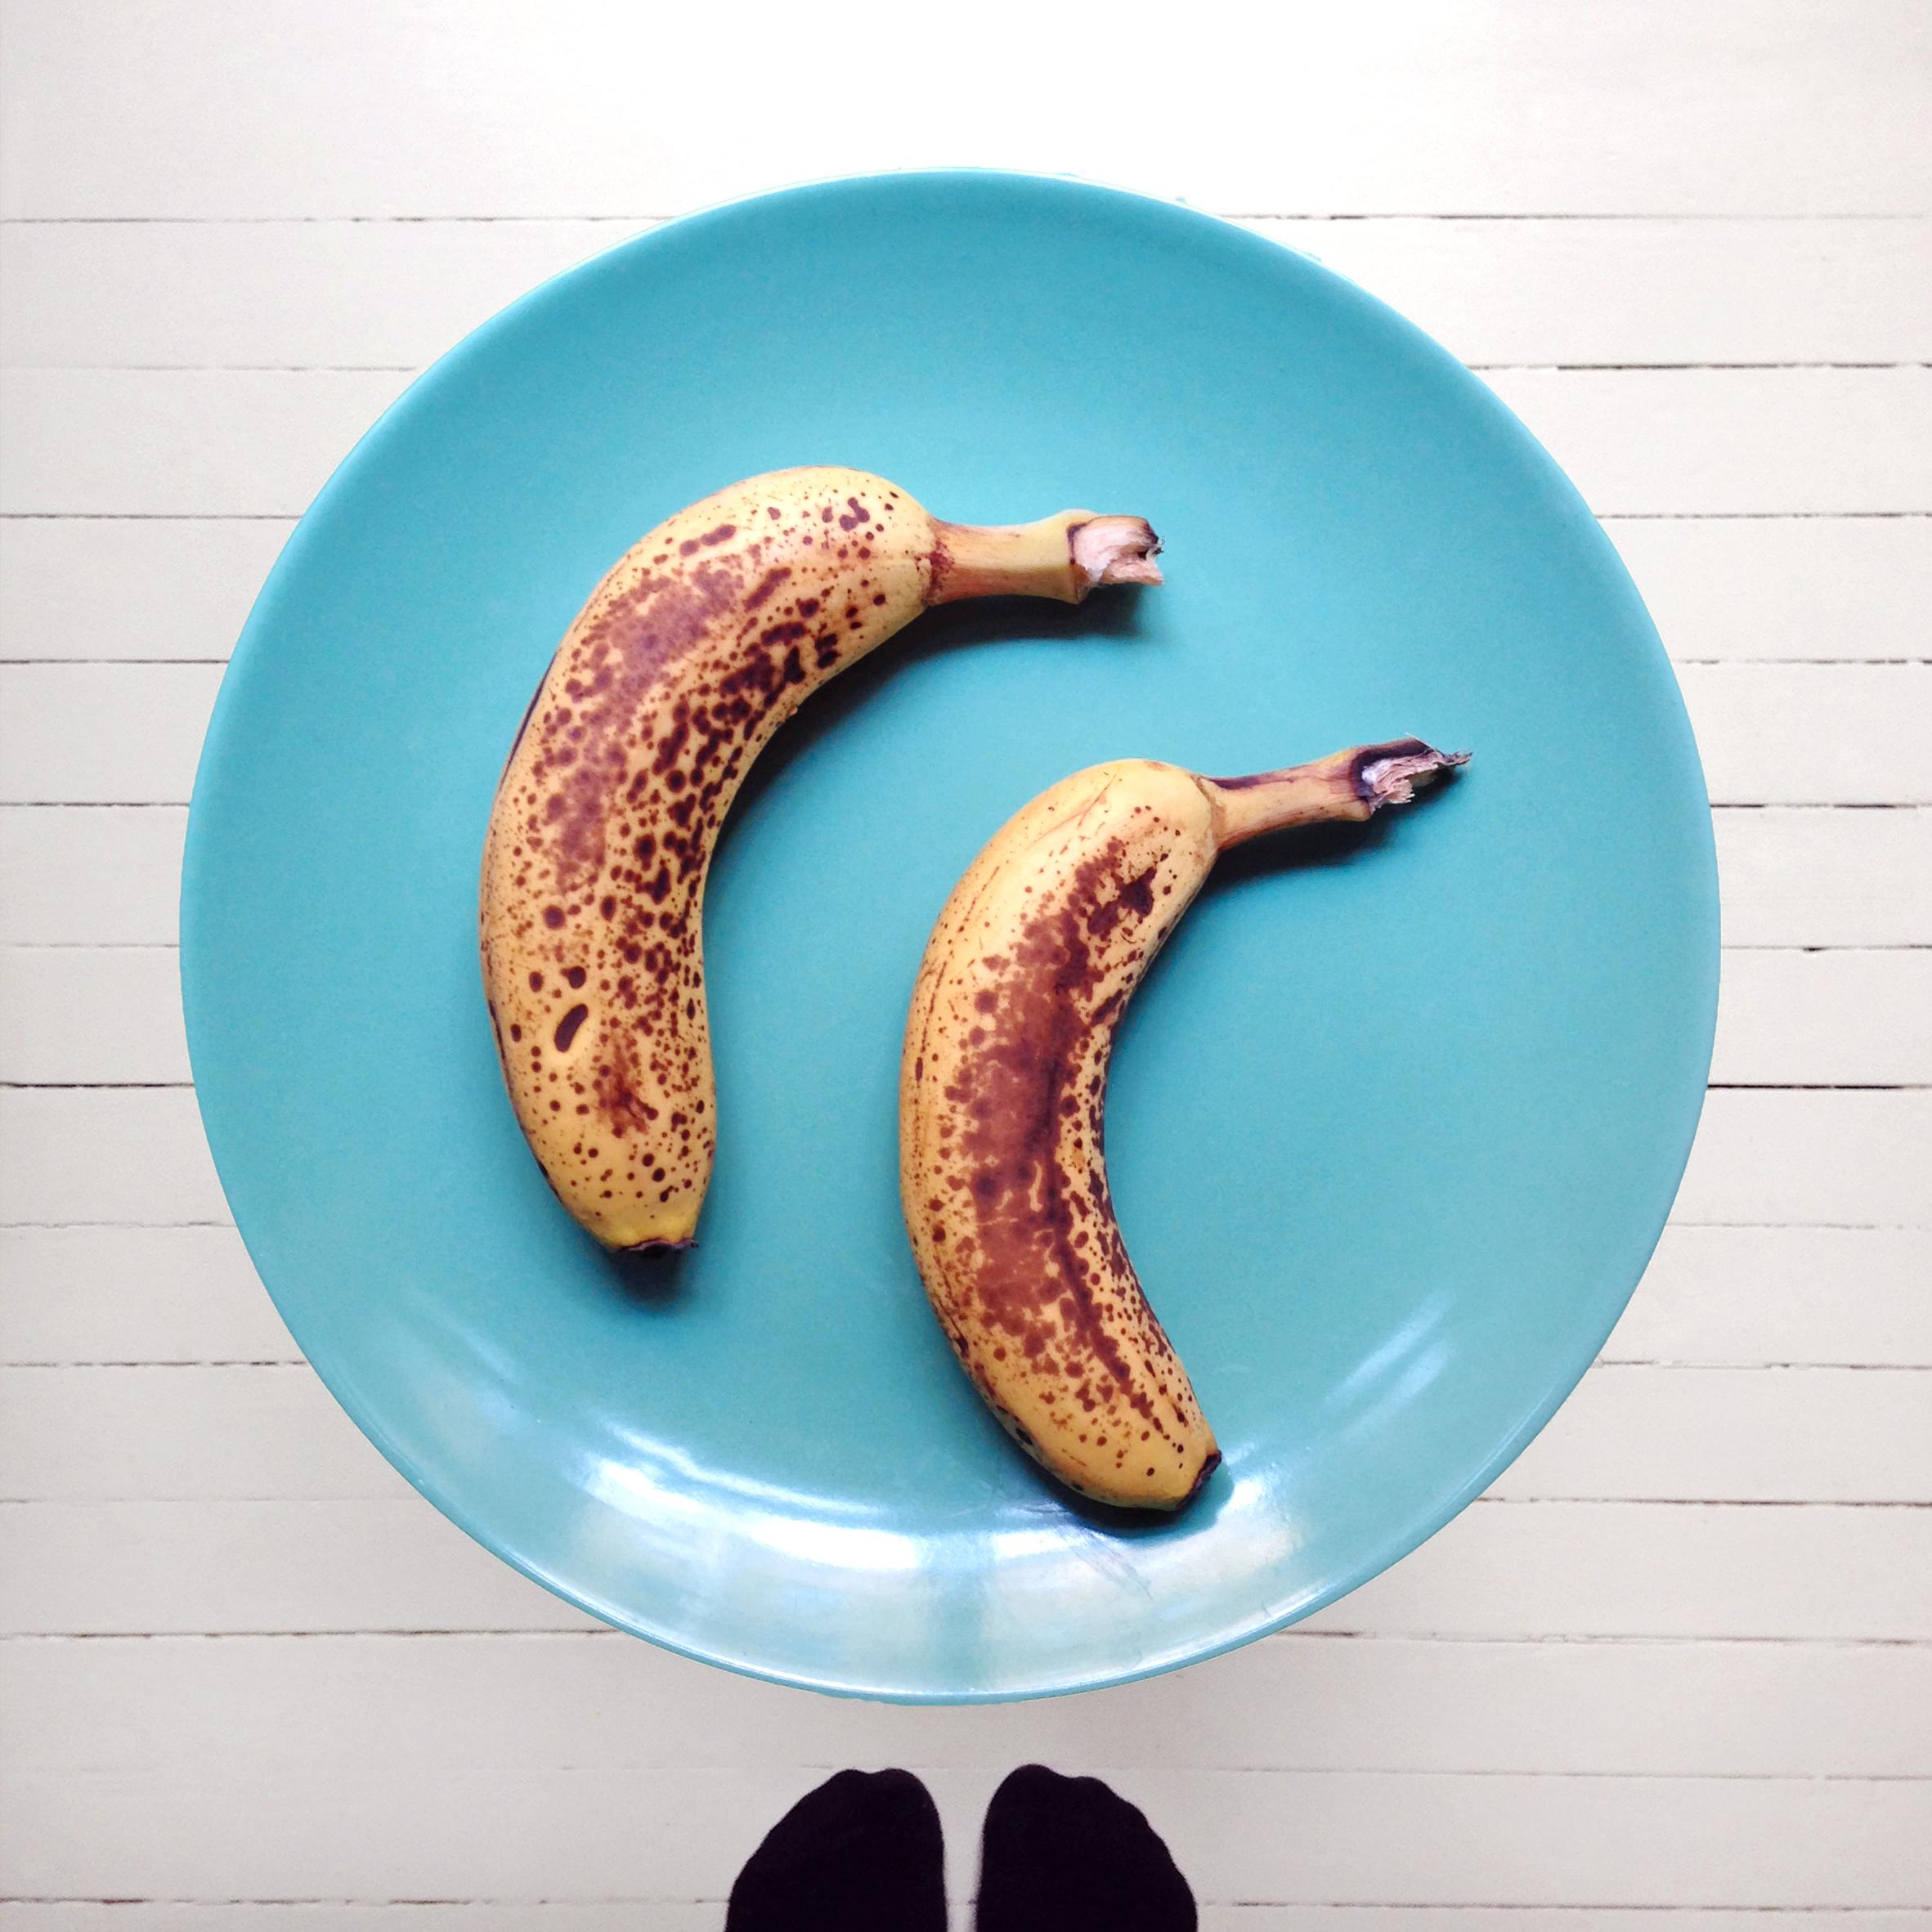 Finn frem frukten du har lyst å bruke, gjerne bananer. Slik de ligger nå ligner de litt på delfiner.